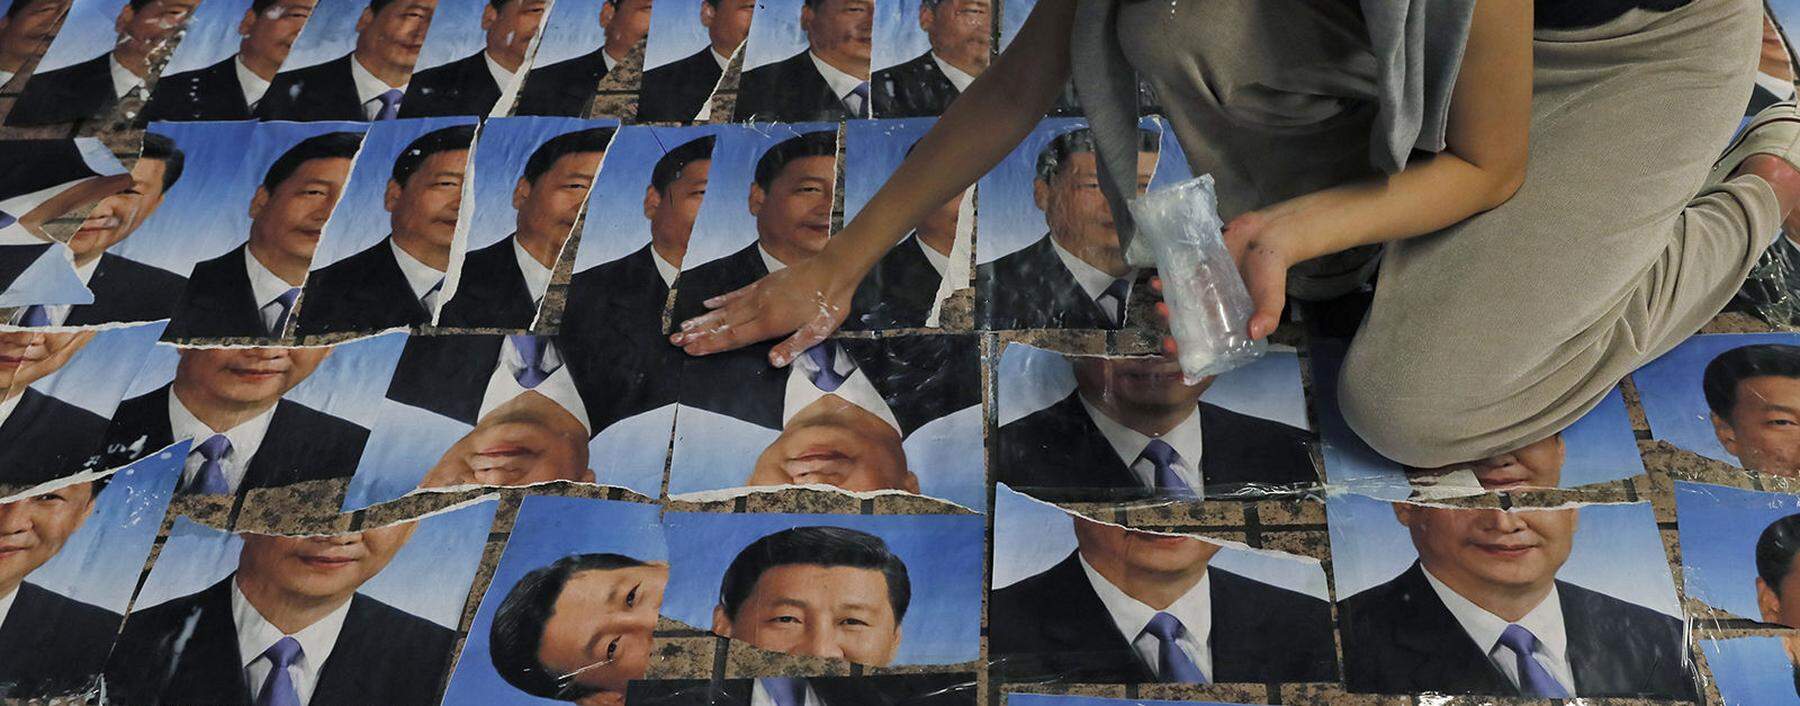 Omnipräsent selbst in Hongkong bei einer Protestaktion – und im Rest Chinas sowieso: Xi Jinping, seit sieben Jahren an der Macht, entwickelt Züge eines Personenkults, der viele an Mao erinnert. Der Präsident führt die kommunistische Partei und die Volksrepublik mit harter Hand.